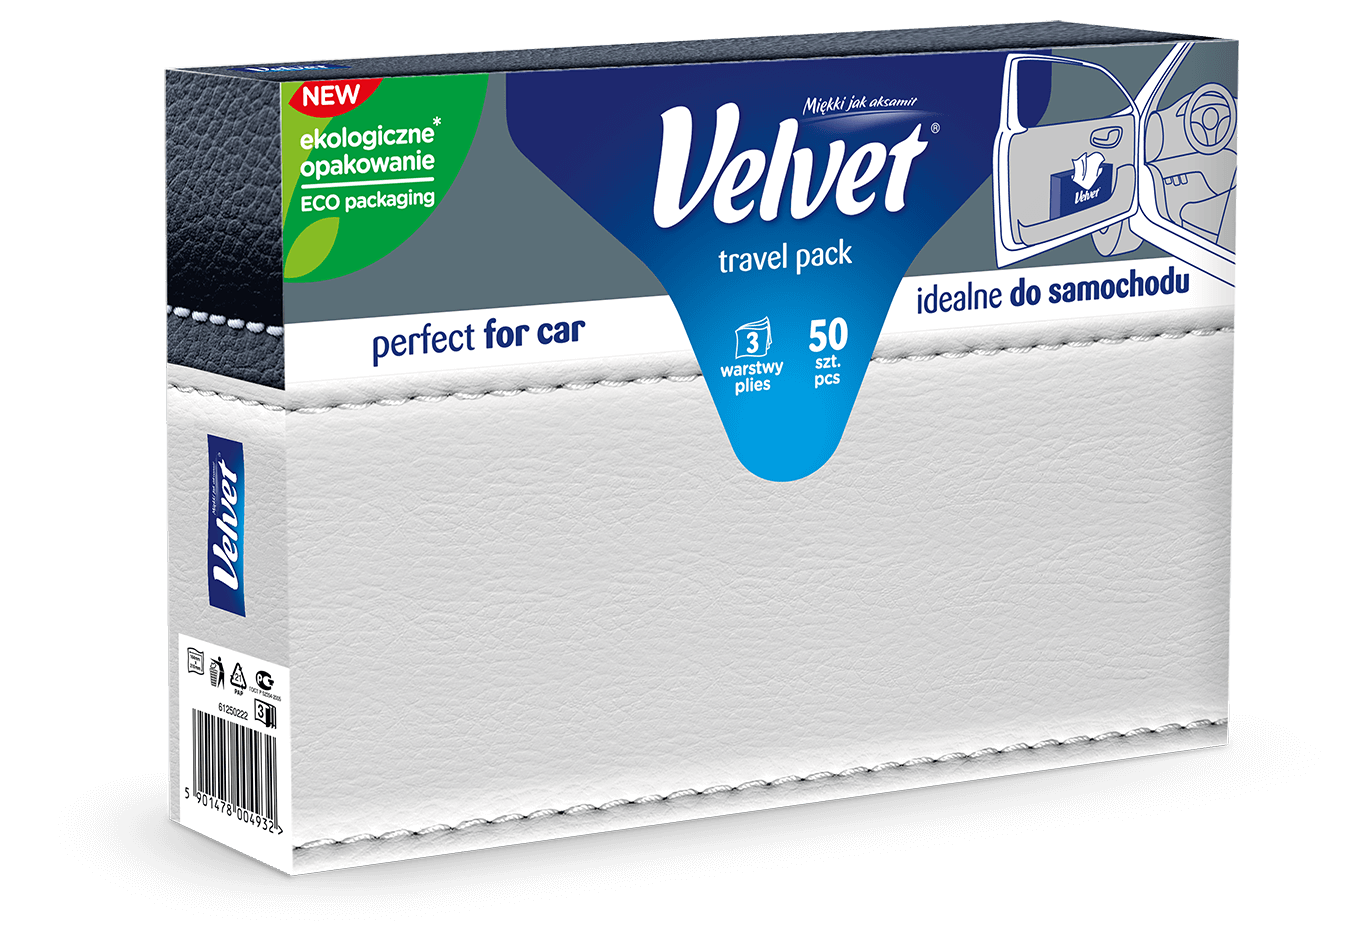 Chusteczki higieniczne Velvet Travel Pack – kolorystyka w odcieniach szarości